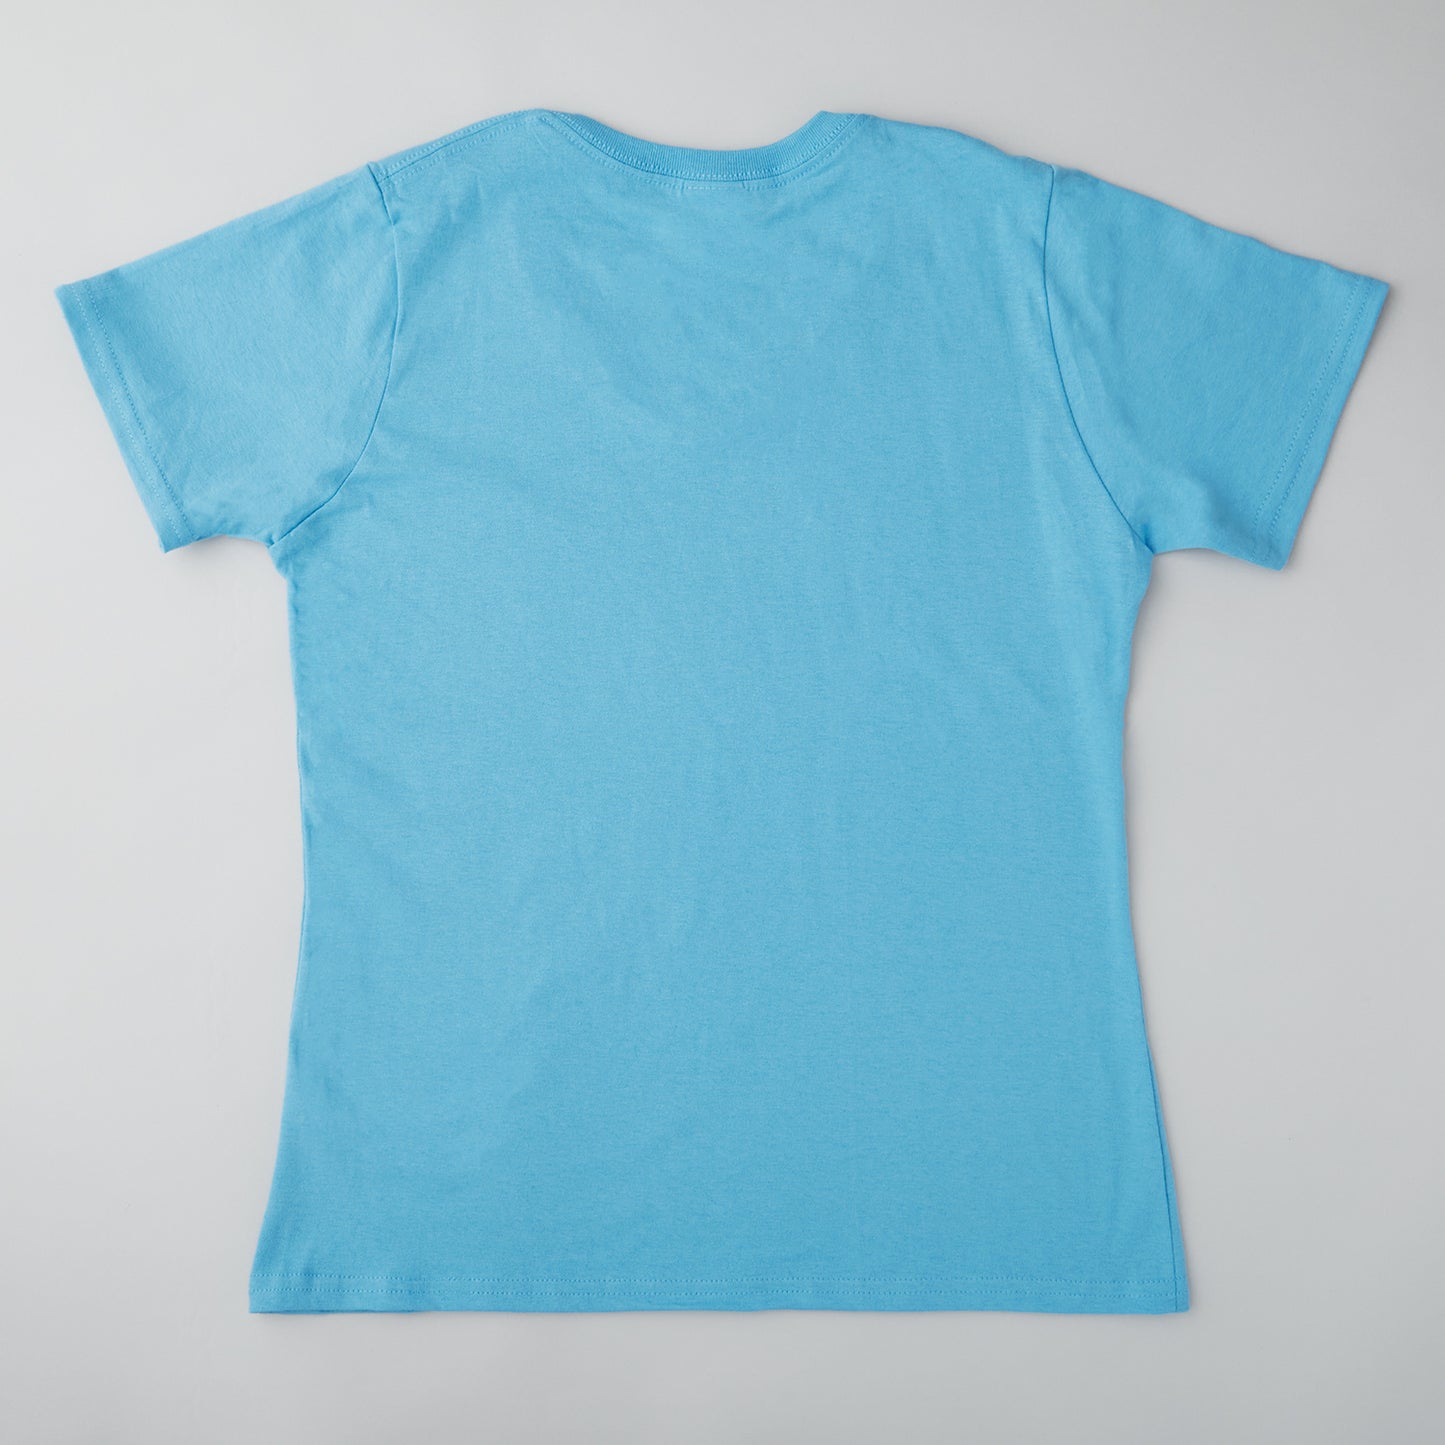 Quiltmaker T-shirt - Aquatic Blue 4XL Alternative View #1